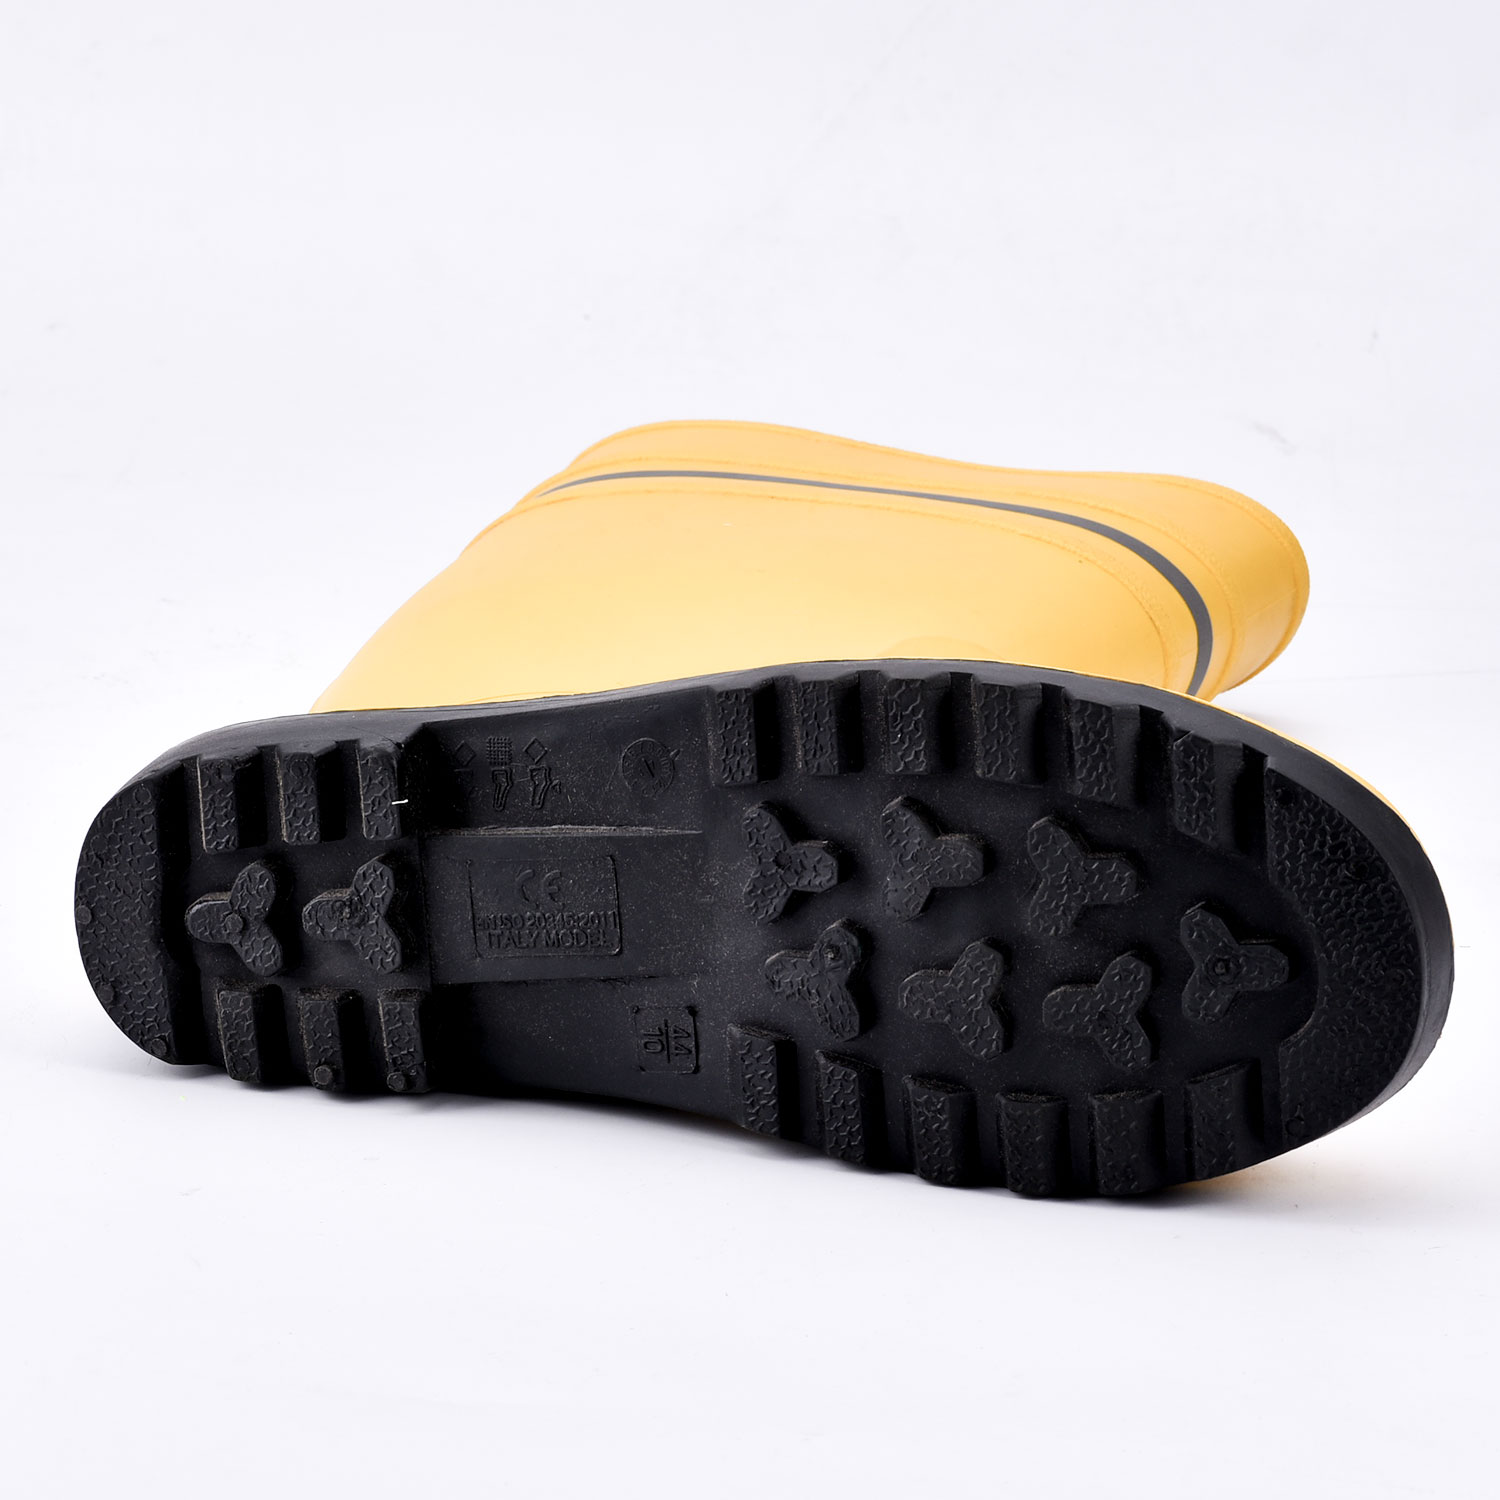 Резиновые сапоги Heavy Duty со стальным носком W-6037 Yellow